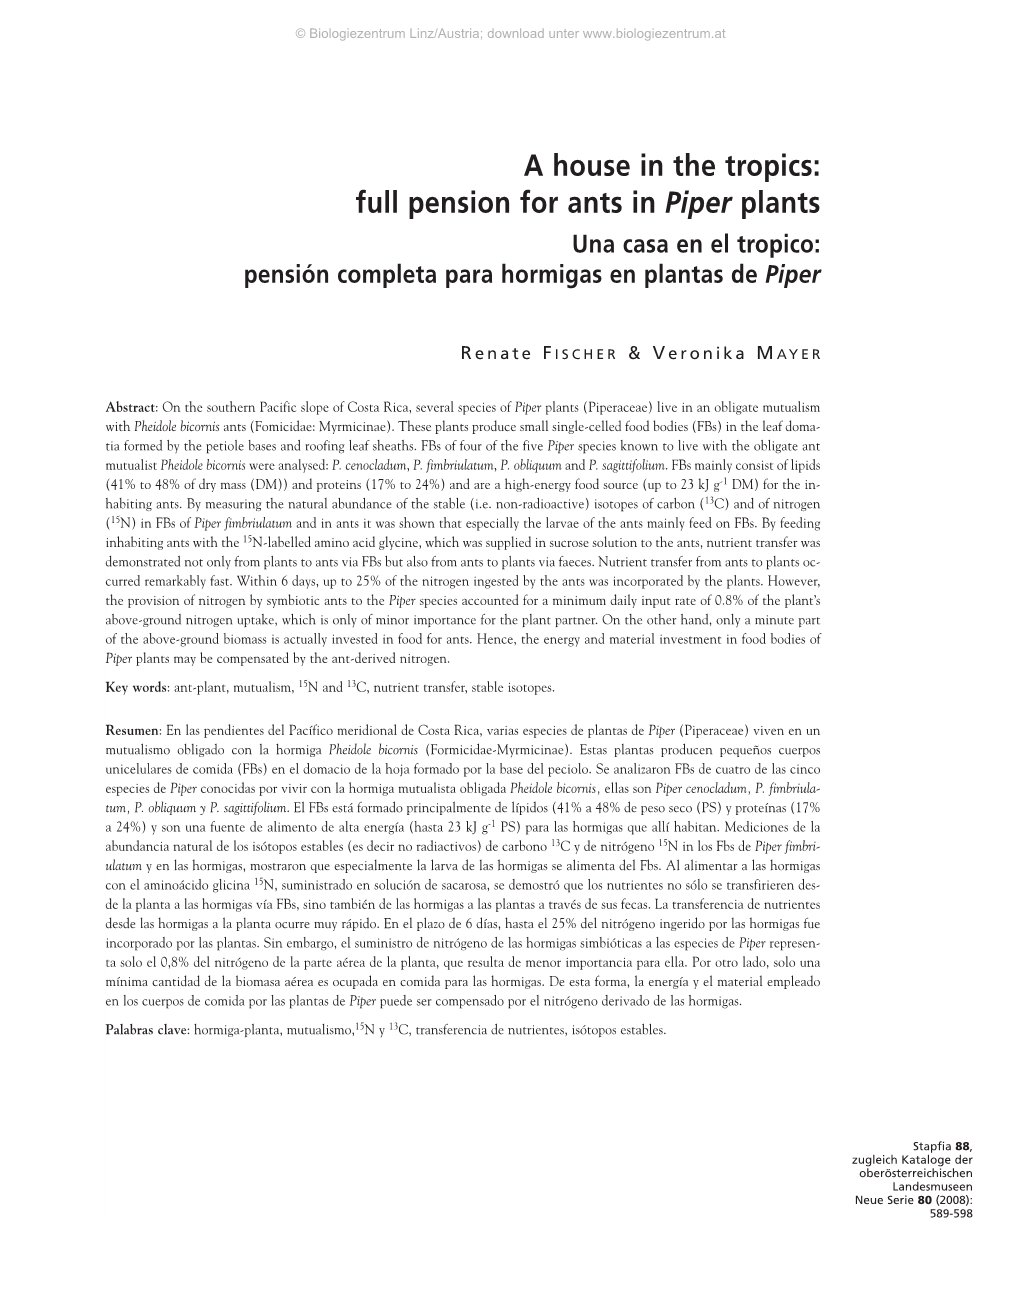 Pensión Completa Para Hormigas En Plantas De Piper